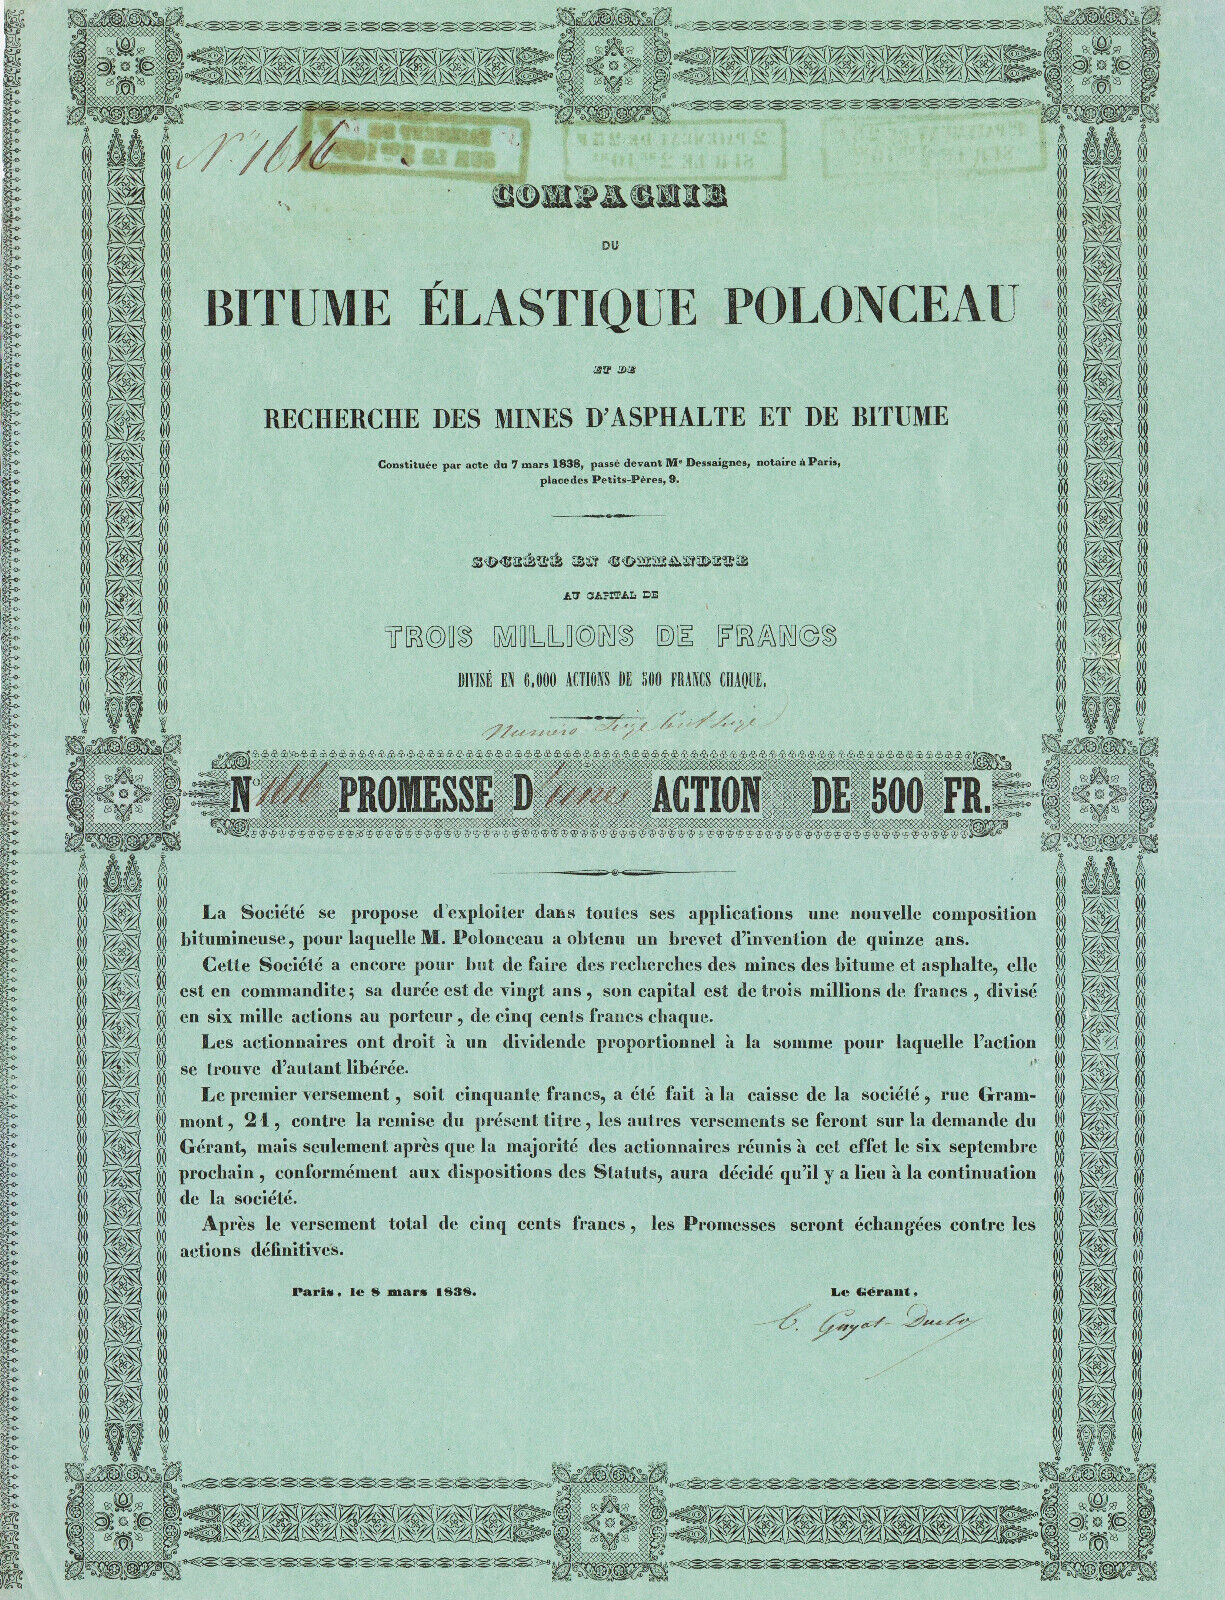 COMPAGNIE DU BITUME ELASTIQUE POLONCEAU - ACTION OF 500 FRANCS 1838 - FRANCE